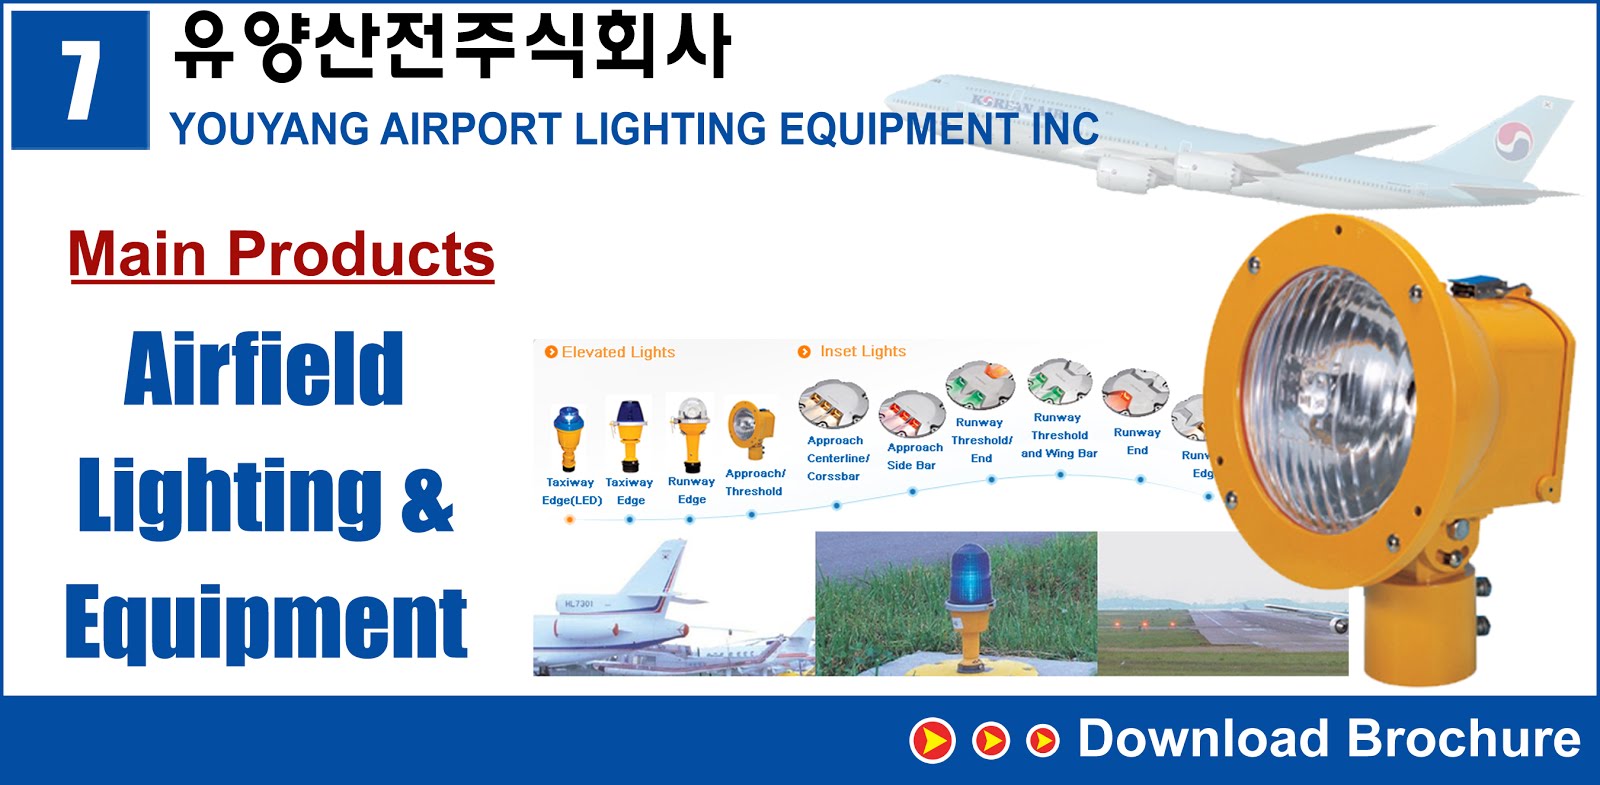 7.YOUYANG AIRPORT LIGHTING EQUIPMENT INC